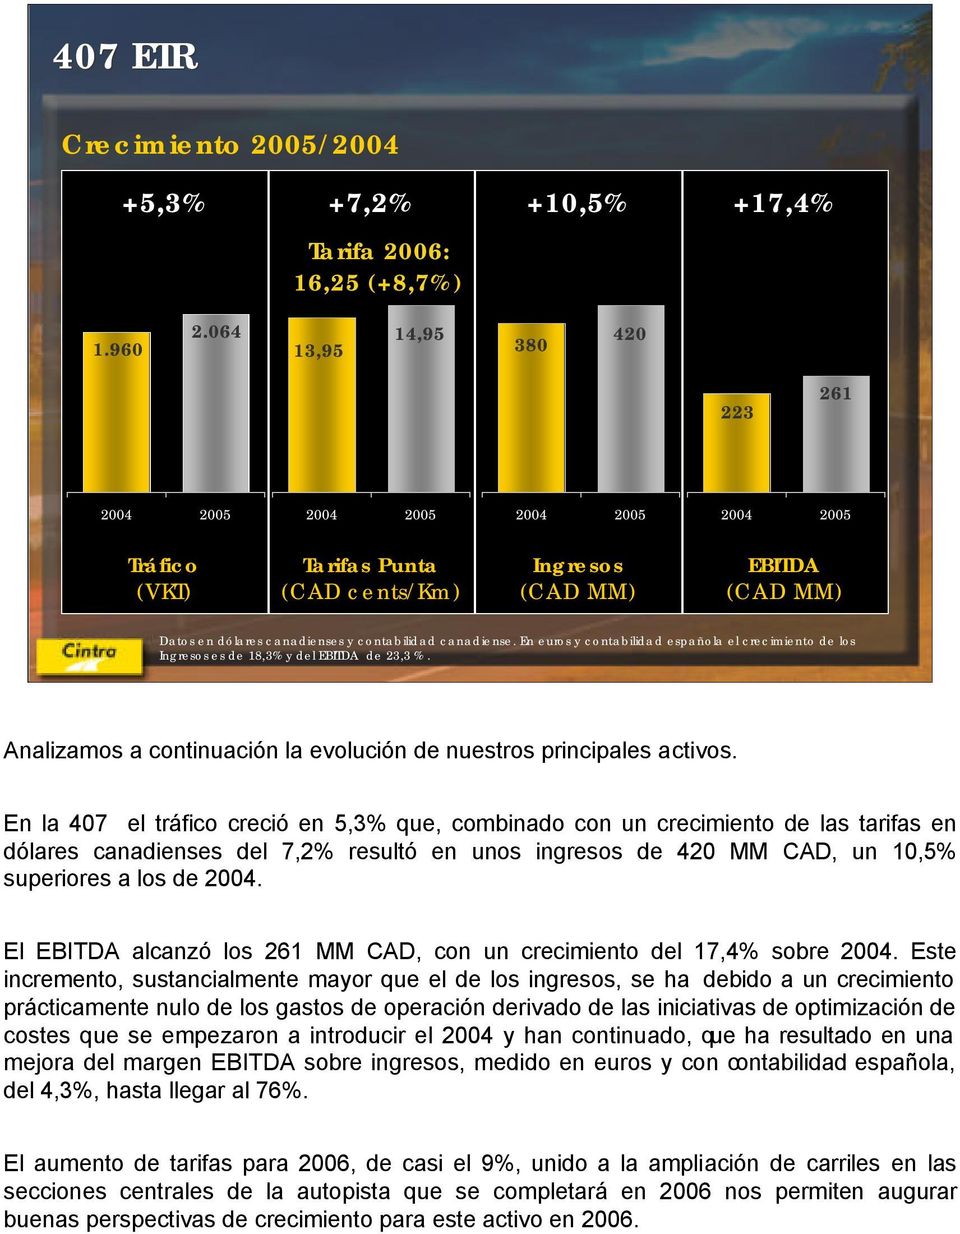 En euros y contabilidad española el crecimiento de los Ingresos es de 18,3% y del EBITDA de 23,3 %. Analizamos a continuación la evolución de nuestros principales activos.